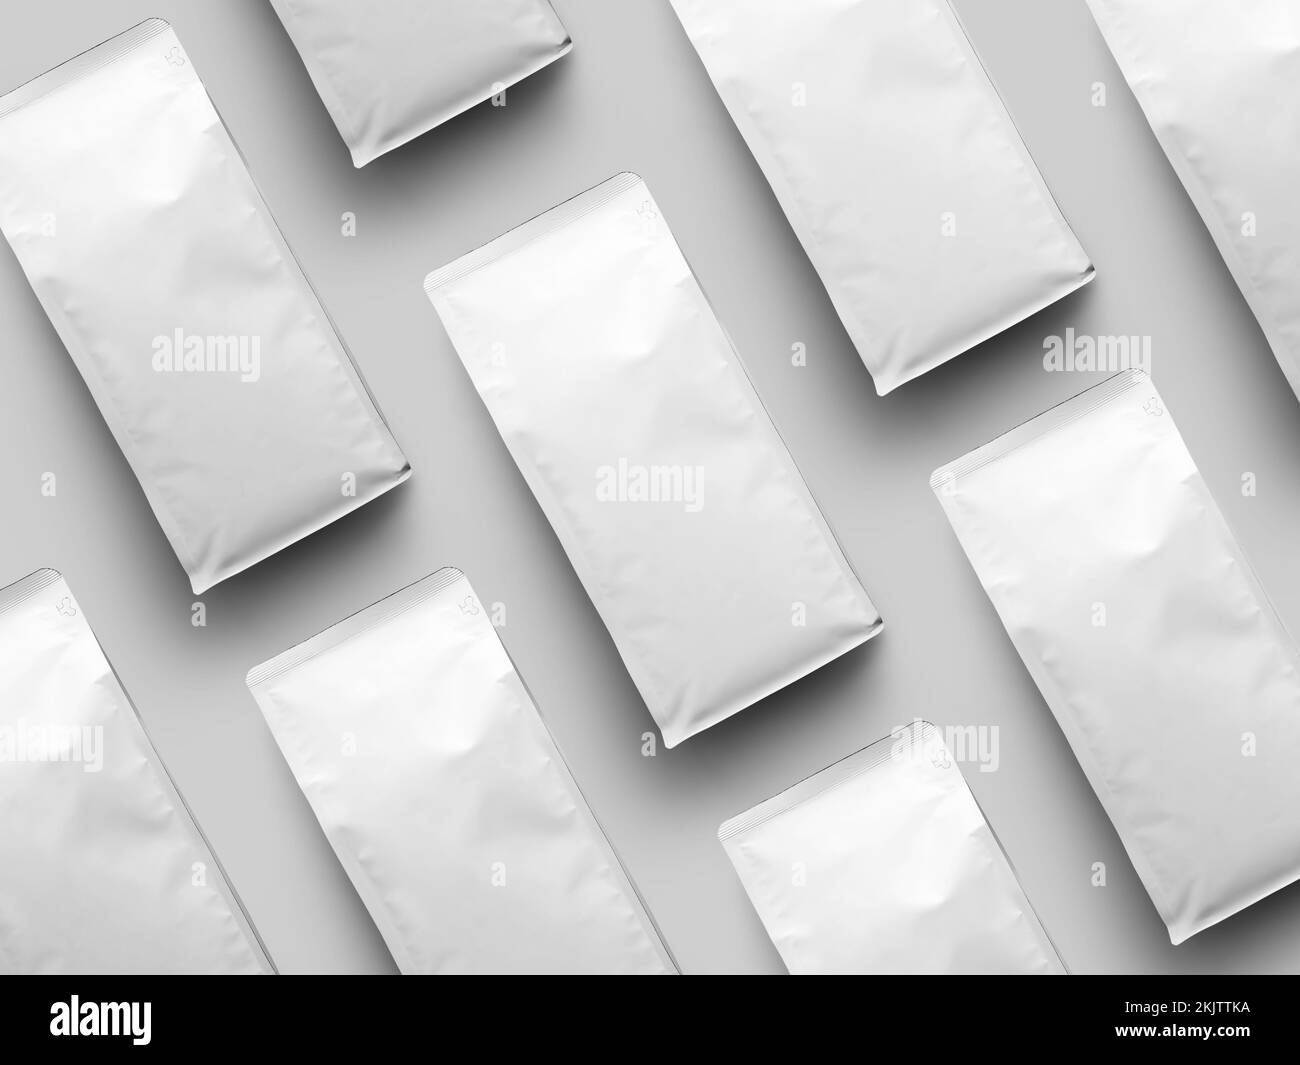 Präsentation eines Sets weißer Beutel für Kaffeebohnen, diagonal angeordnet, Vorderansicht, Verpackungsmodell für Design, Branding, Werbung. Beuteltempl Stockfoto